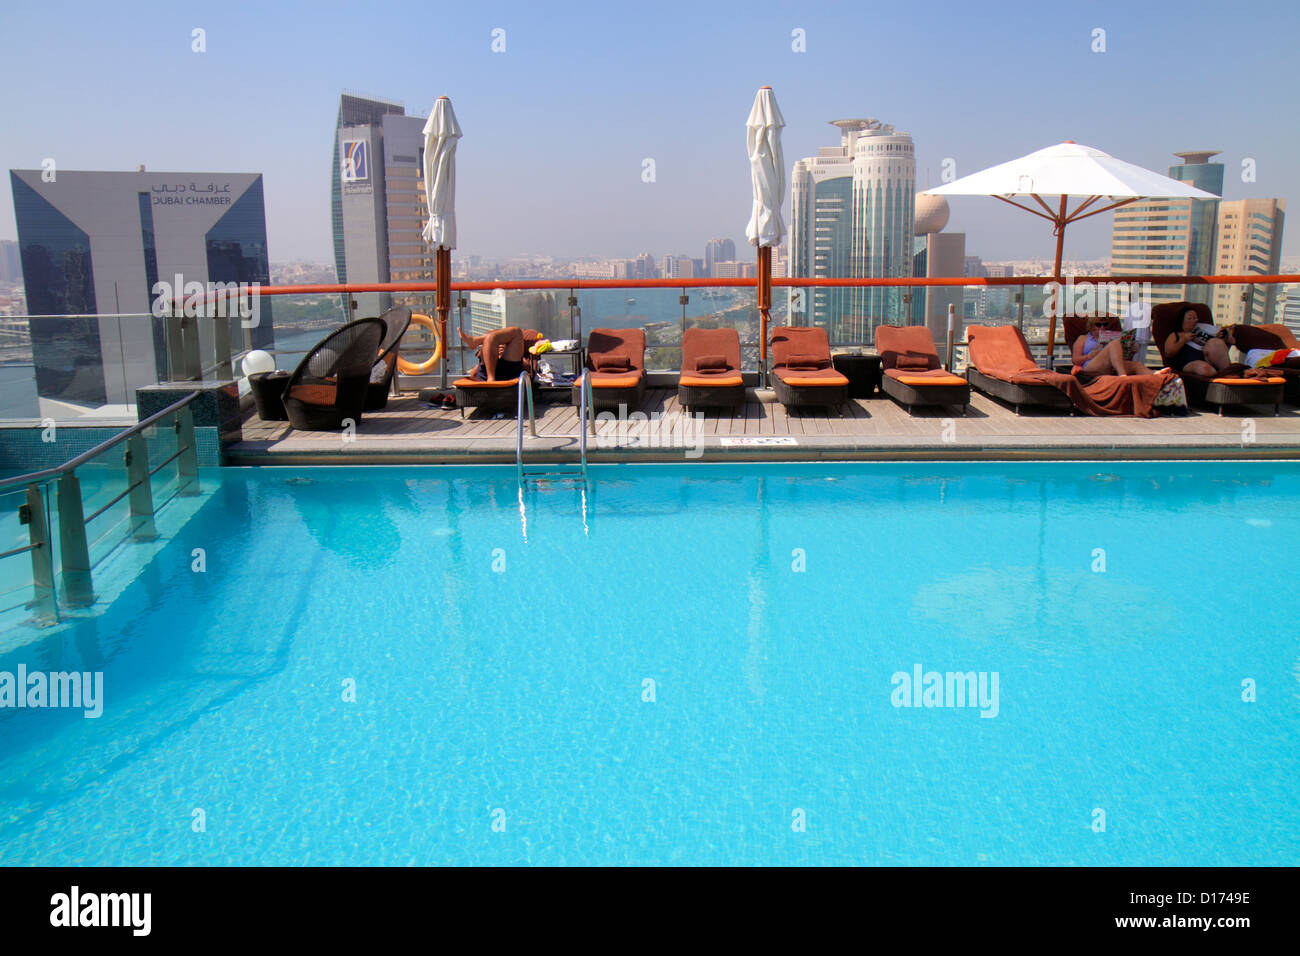 Dubai VAE, Vereinigte Arabische Emirate, Baniyas Road, Hilton Dubai Creek, Hotel, Swimmingpool auf dem Dach, Wasser, Liegestühle, UAE121011041 Stockfoto